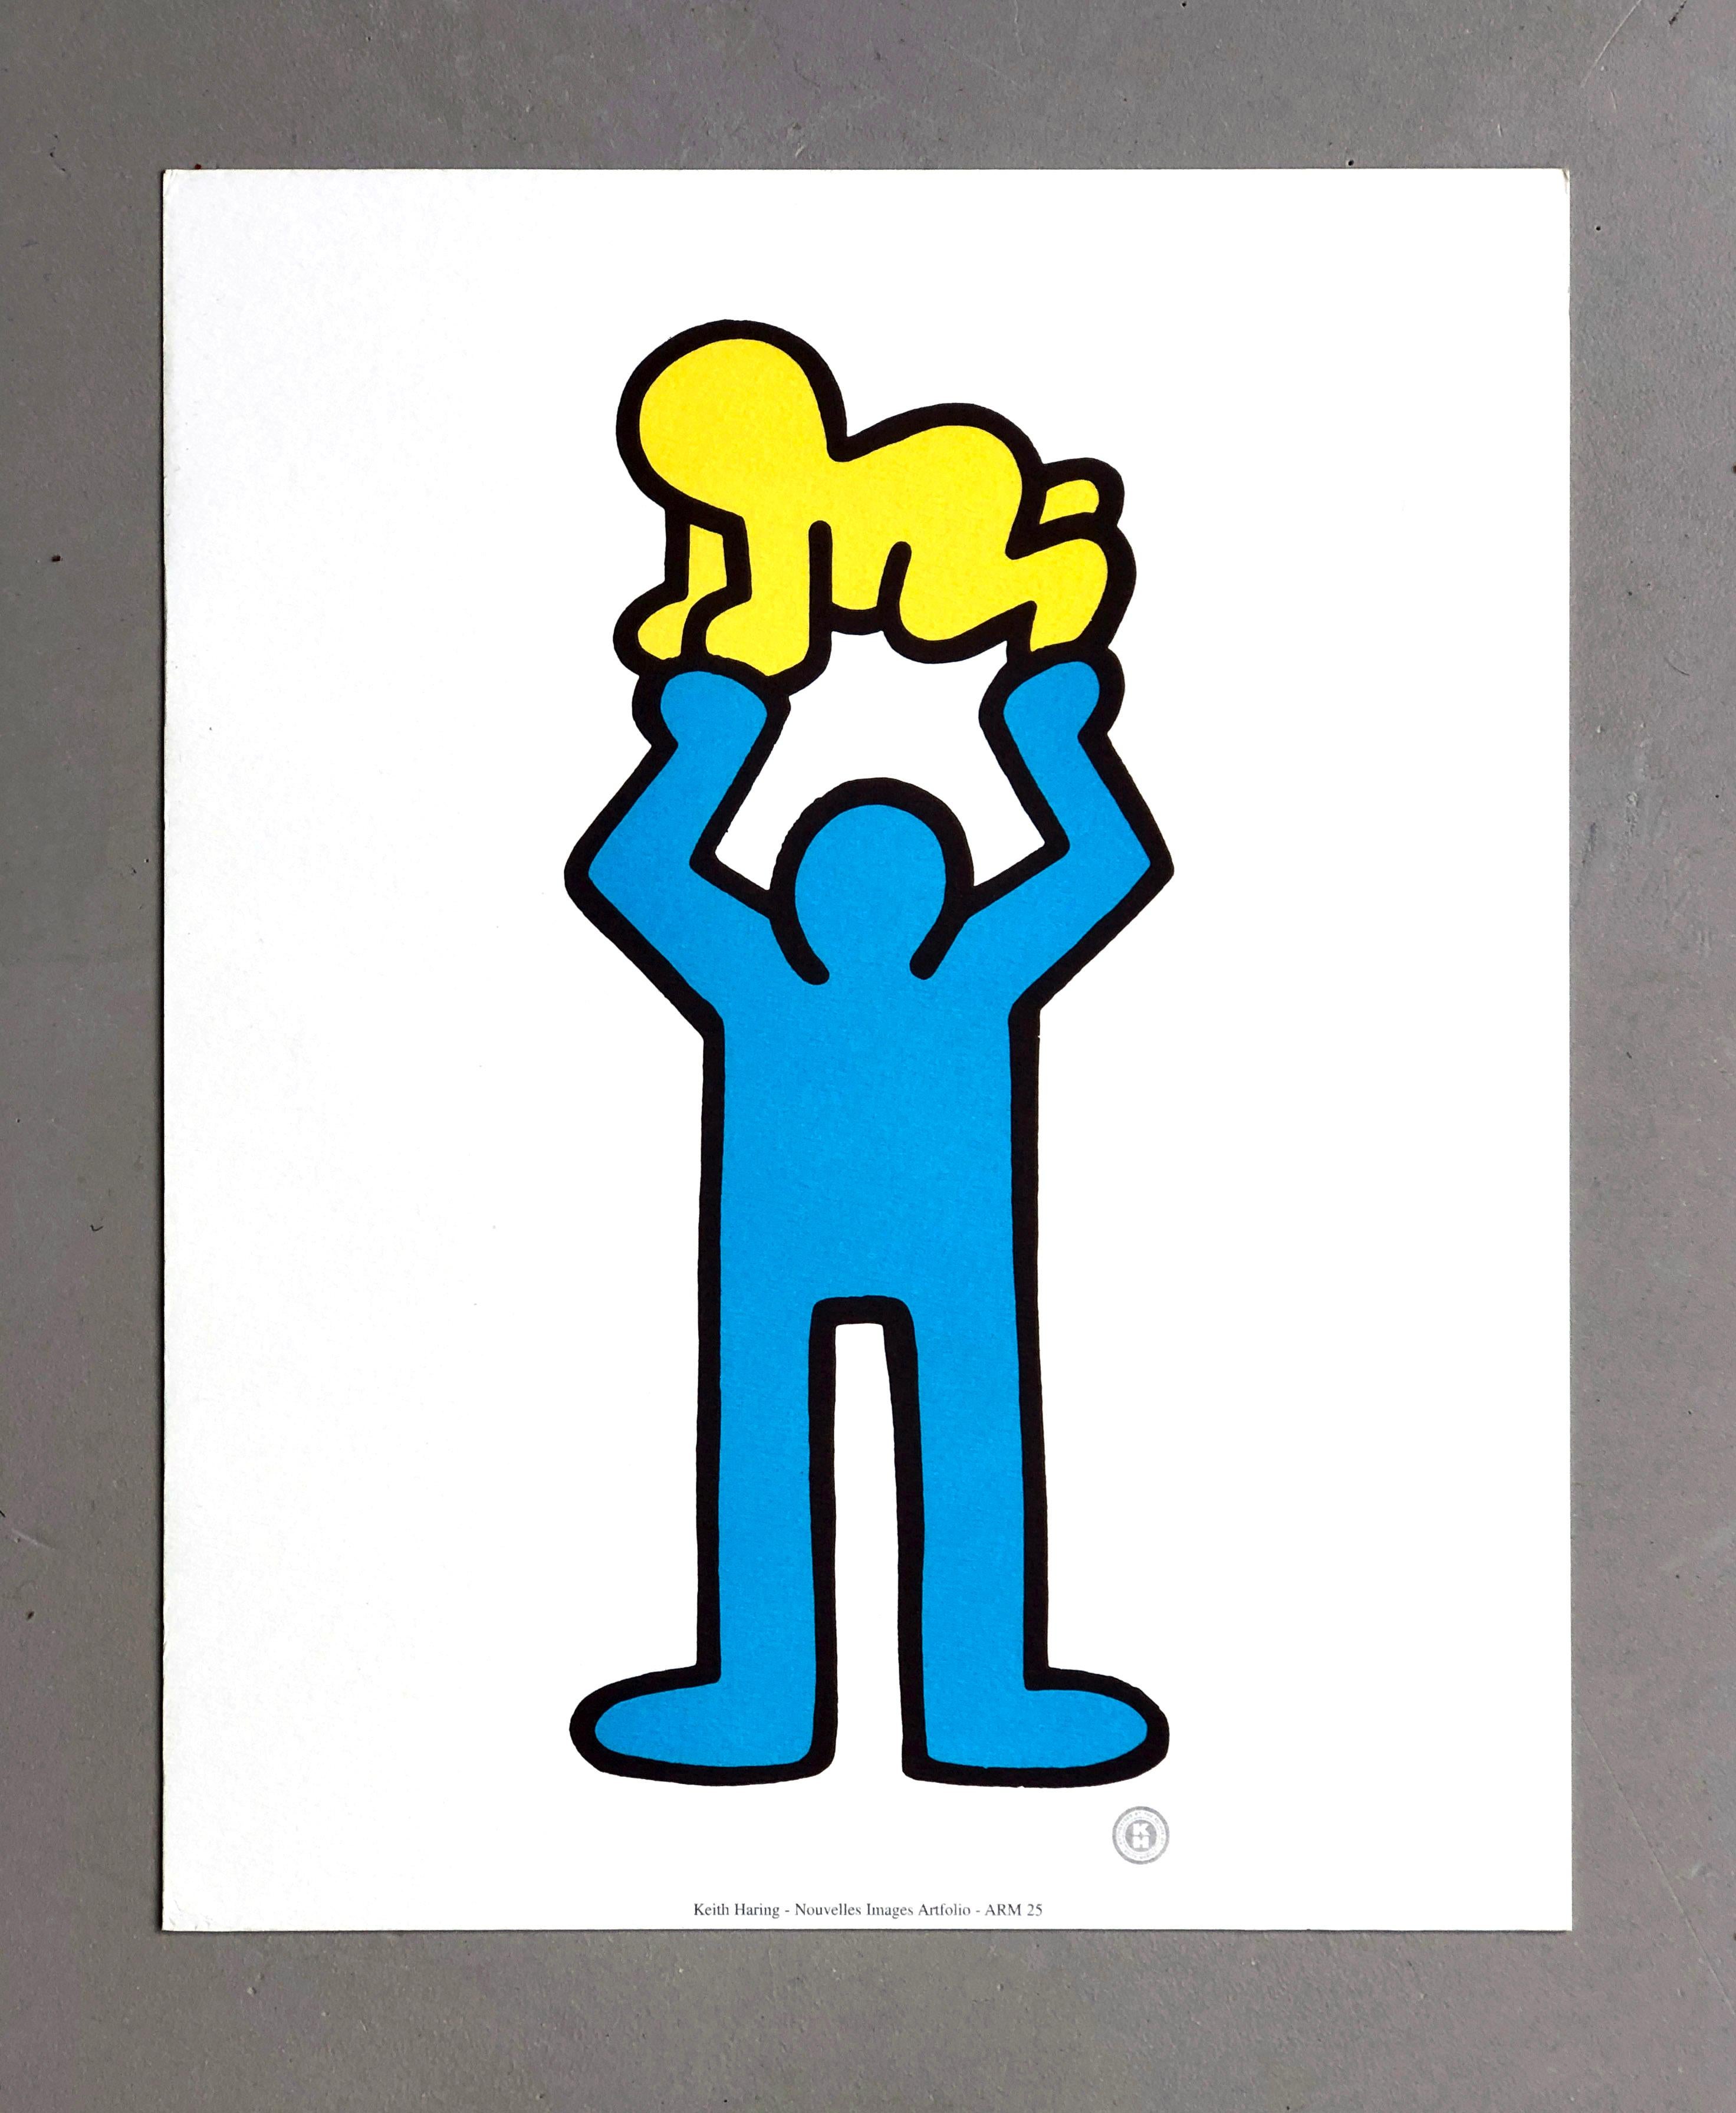 Keith Haring 1992 Pop Art - Kunst-Offsetdruck auf dickem Kunstdruckpapier, Mann hält strahlendes Baby

Keith Haring (New York, 1958-1990), französischer Pop-Art-Künstler aus dem Jahr 1992 - Offsetdruck ohne Titel, der eine blaue Figur zeigt, die auf